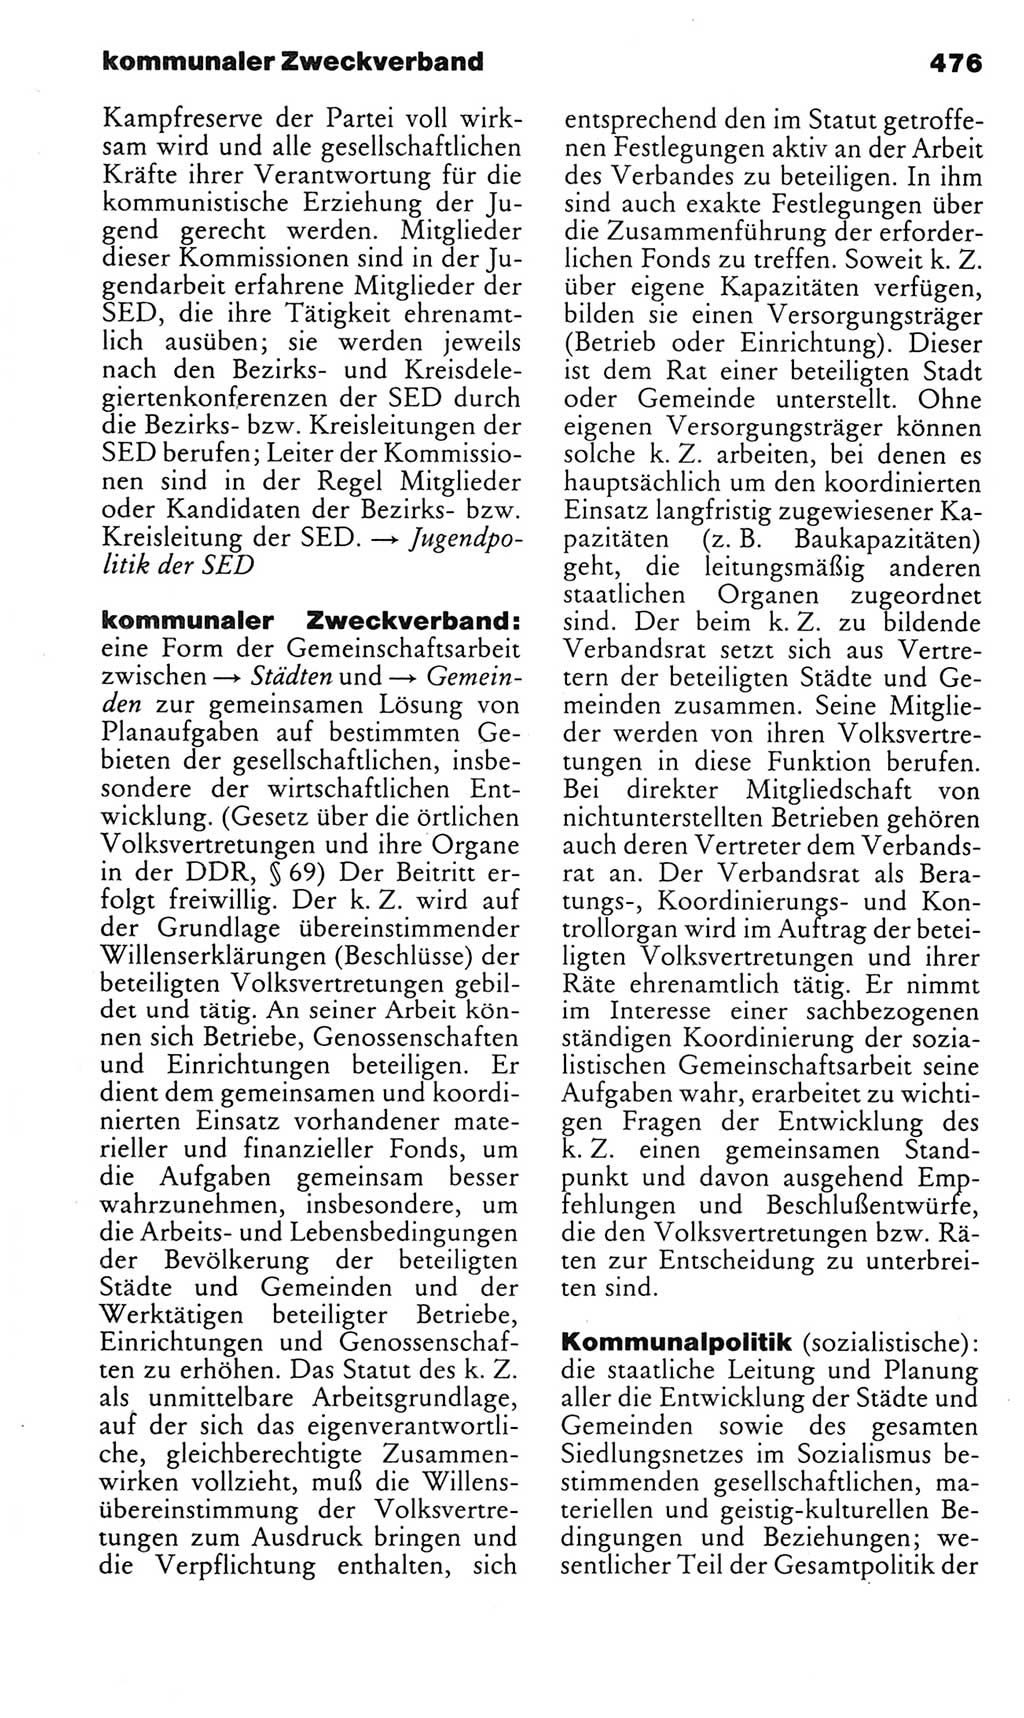 Kleines politisches Wörterbuch [Deutsche Demokratische Republik (DDR)] 1983, Seite 476 (Kl. pol. Wb. DDR 1983, S. 476)